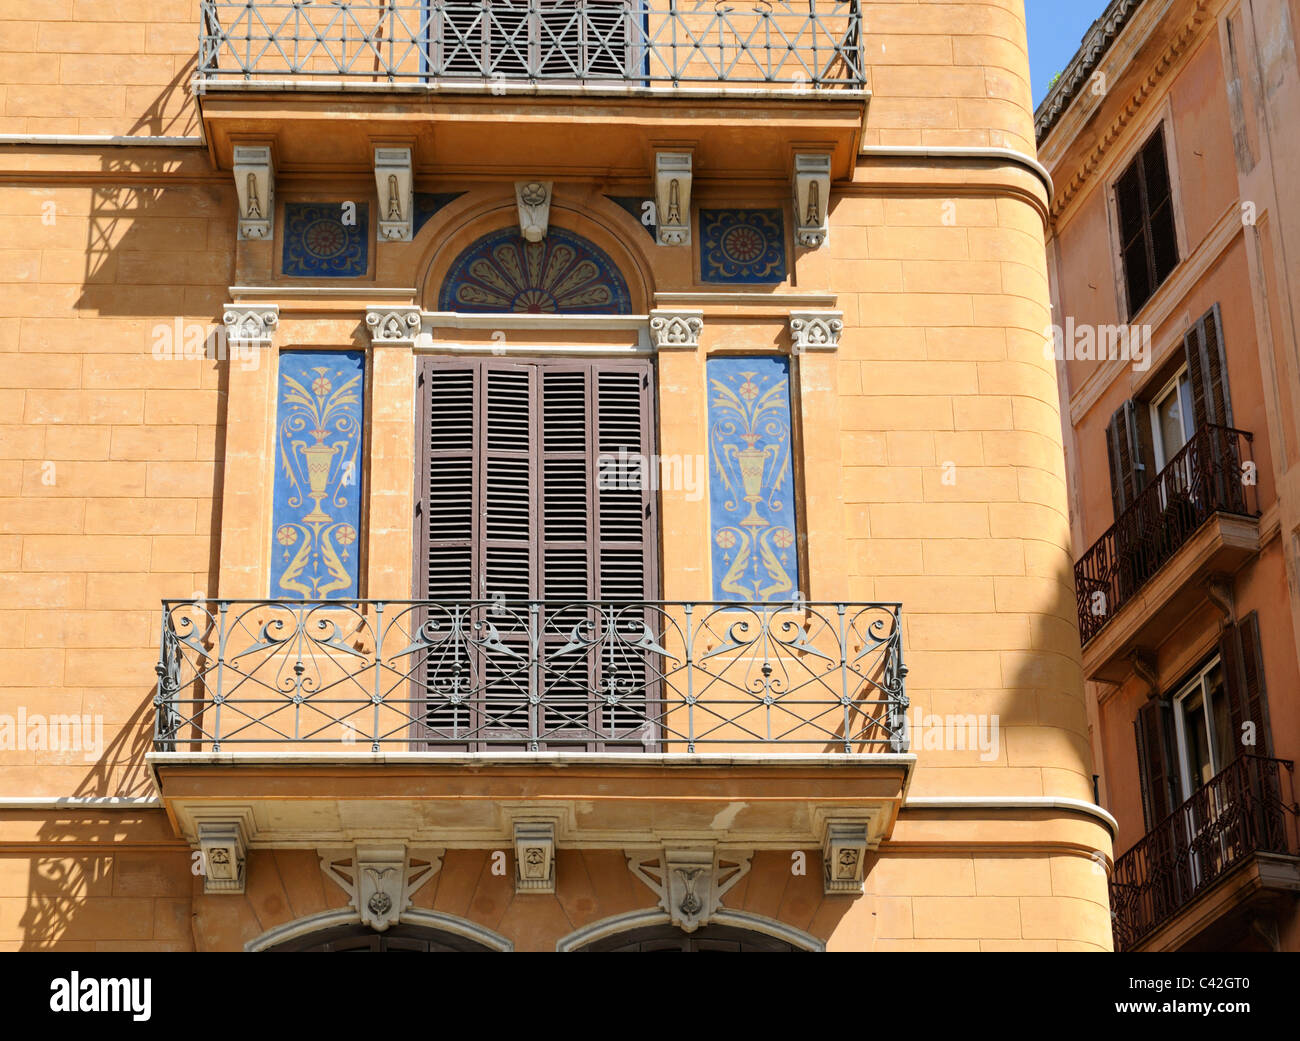 Wohnhaus Mit Balkonen Und Wandmalerei, Palma, Spanien. -Wohnhaus mit Balkonen und Wandmalerei, Palma, Spanien. Stockfoto